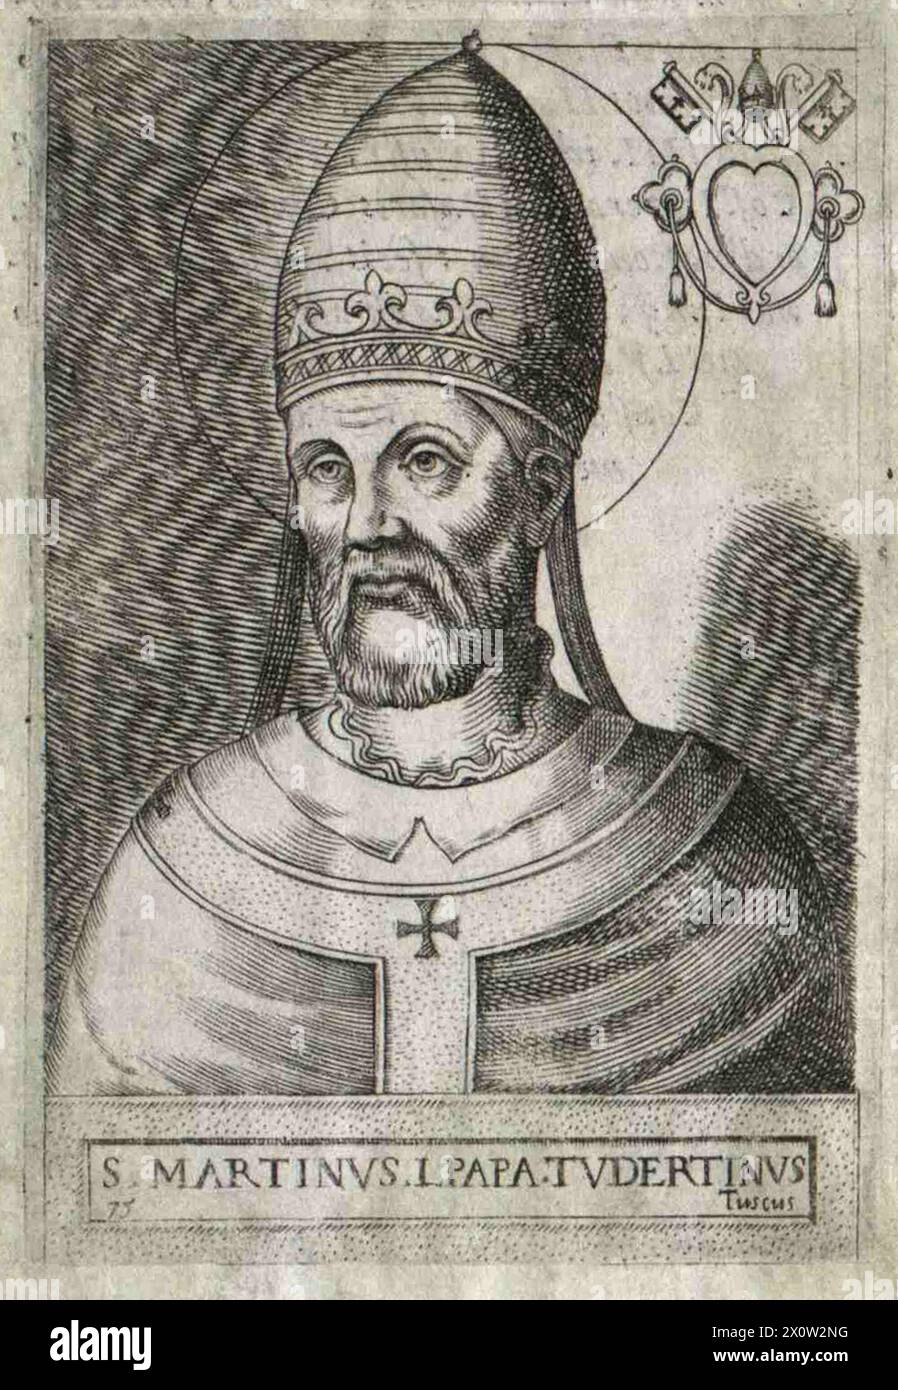 Ein Kupferstich von Papst Marcellus I. aus dem 16. Jahrhundert, der von 649 bis 655 Jahre alt war. Er war der 74. Papst. Er wurde verhaftet und nach einer verheerenden Inhaftierung nach Cherson auf der Krim verbannt. Er ist der letzte Papst, der als Märtyrer gilt. Stockfoto